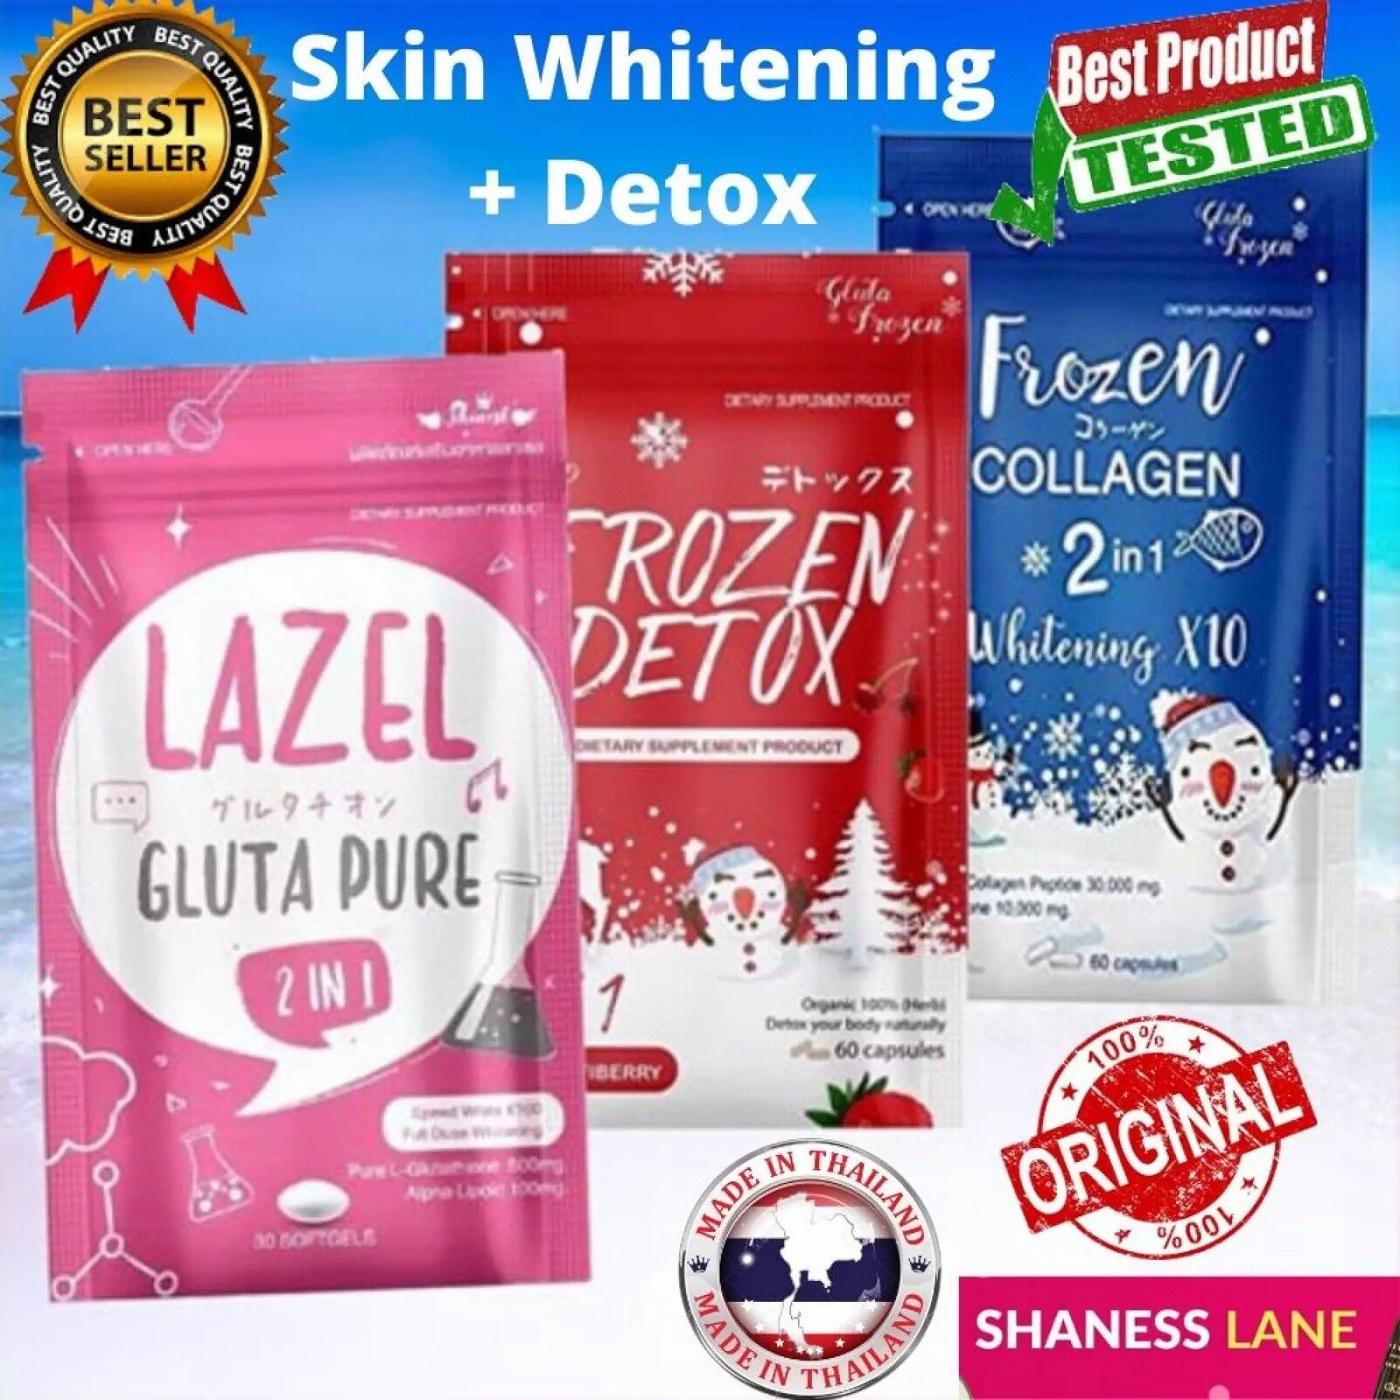 1 Frozen Collagen, 1 Frozen Detox & 1 Lazel Gluta Pure Glutathione Authentic